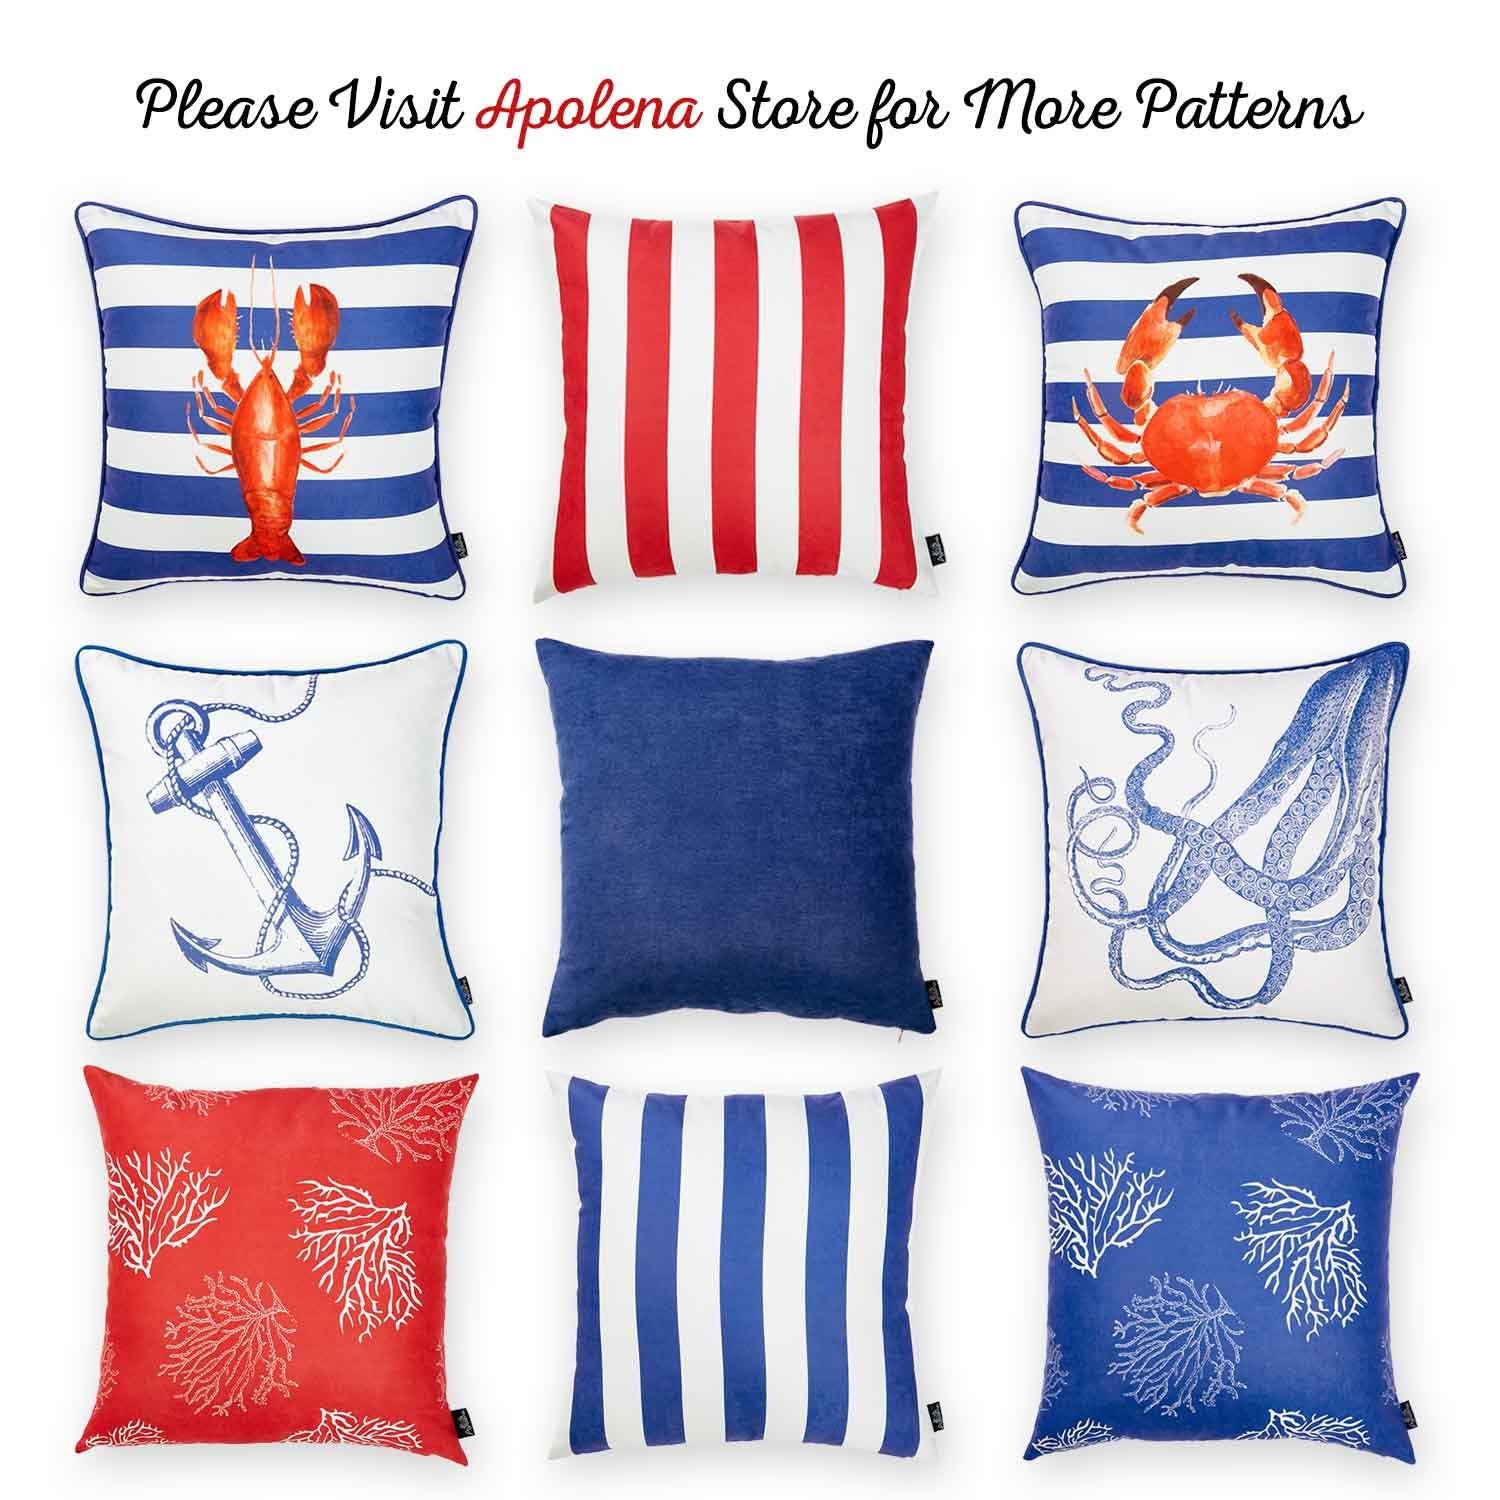 Nautica Octopus Square 18" Decorative Throw Pillow Cover - Apolena